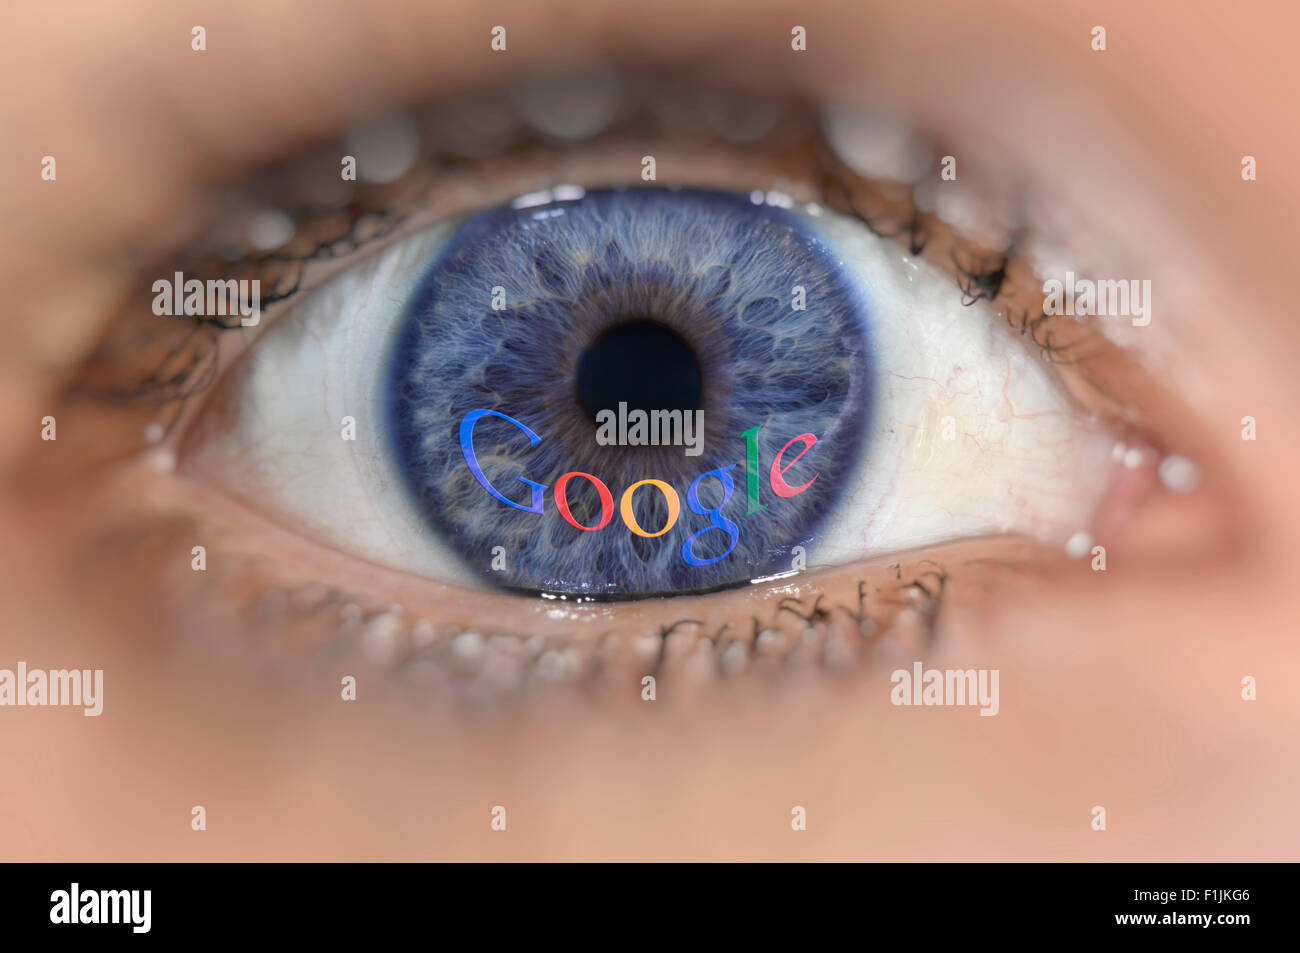 Blue eye with the Google logo on iris, symbolic image, data security Stock Photo